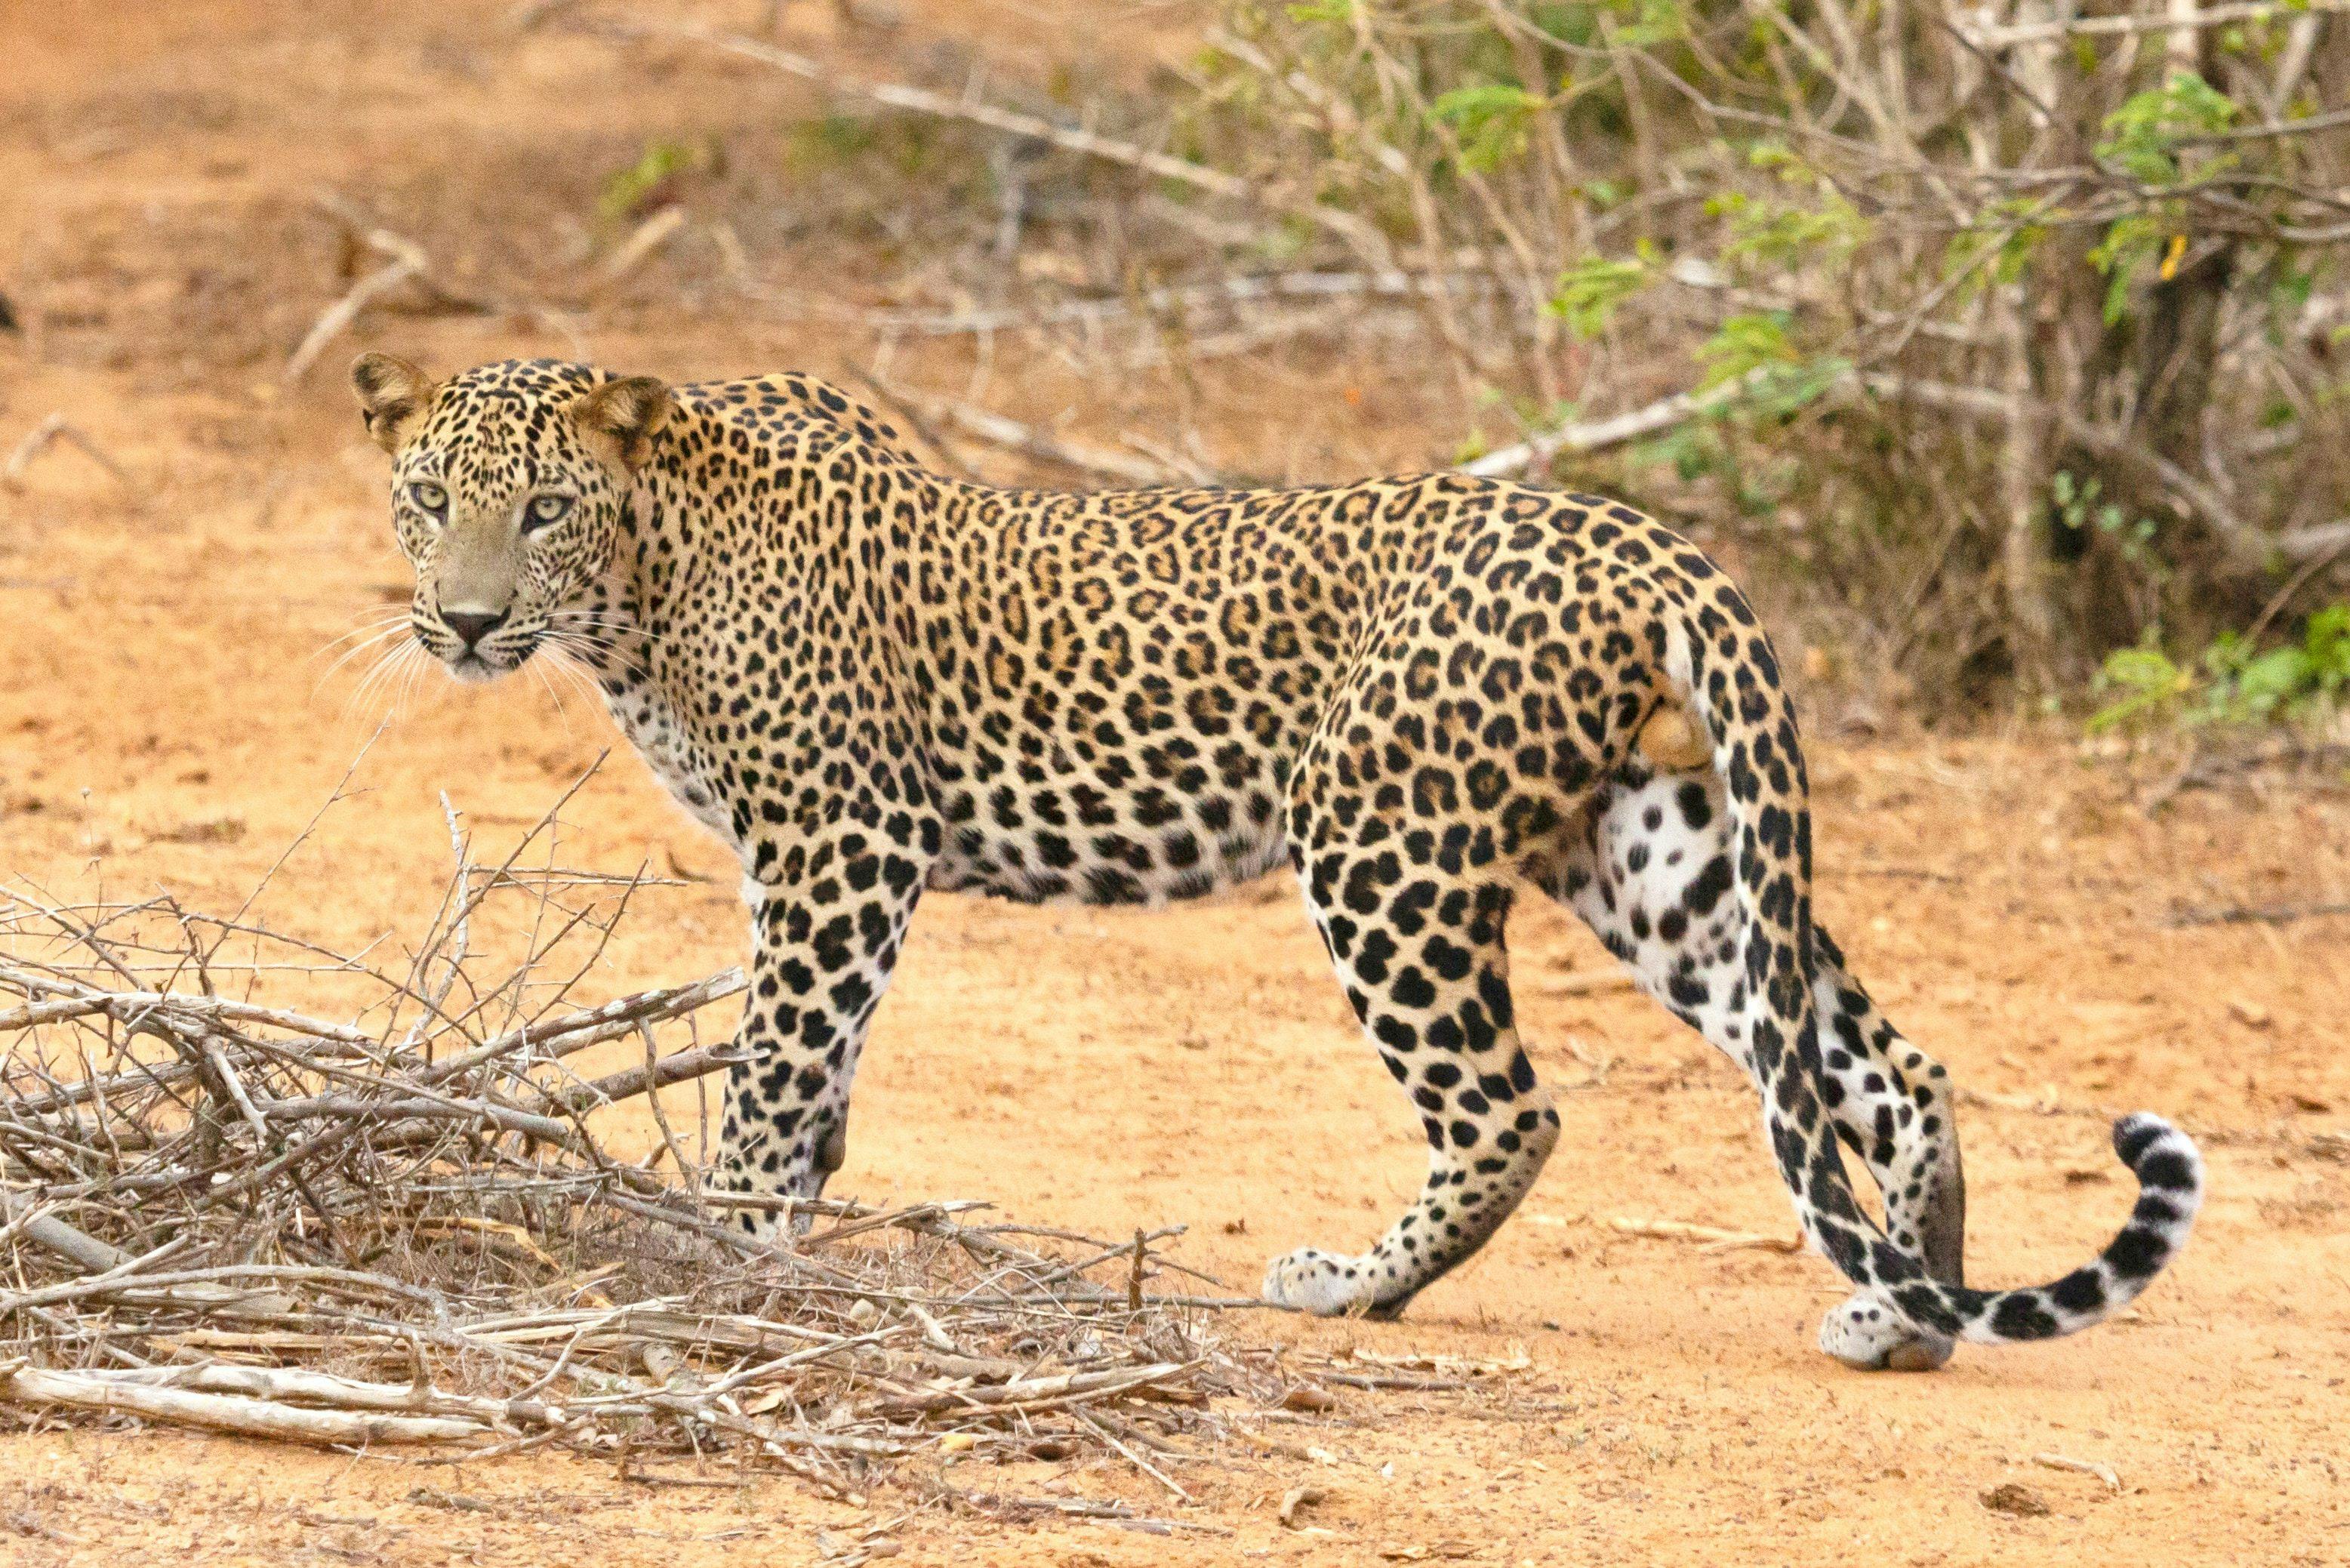 Leopard in Yala National Park in Sri Lanka.